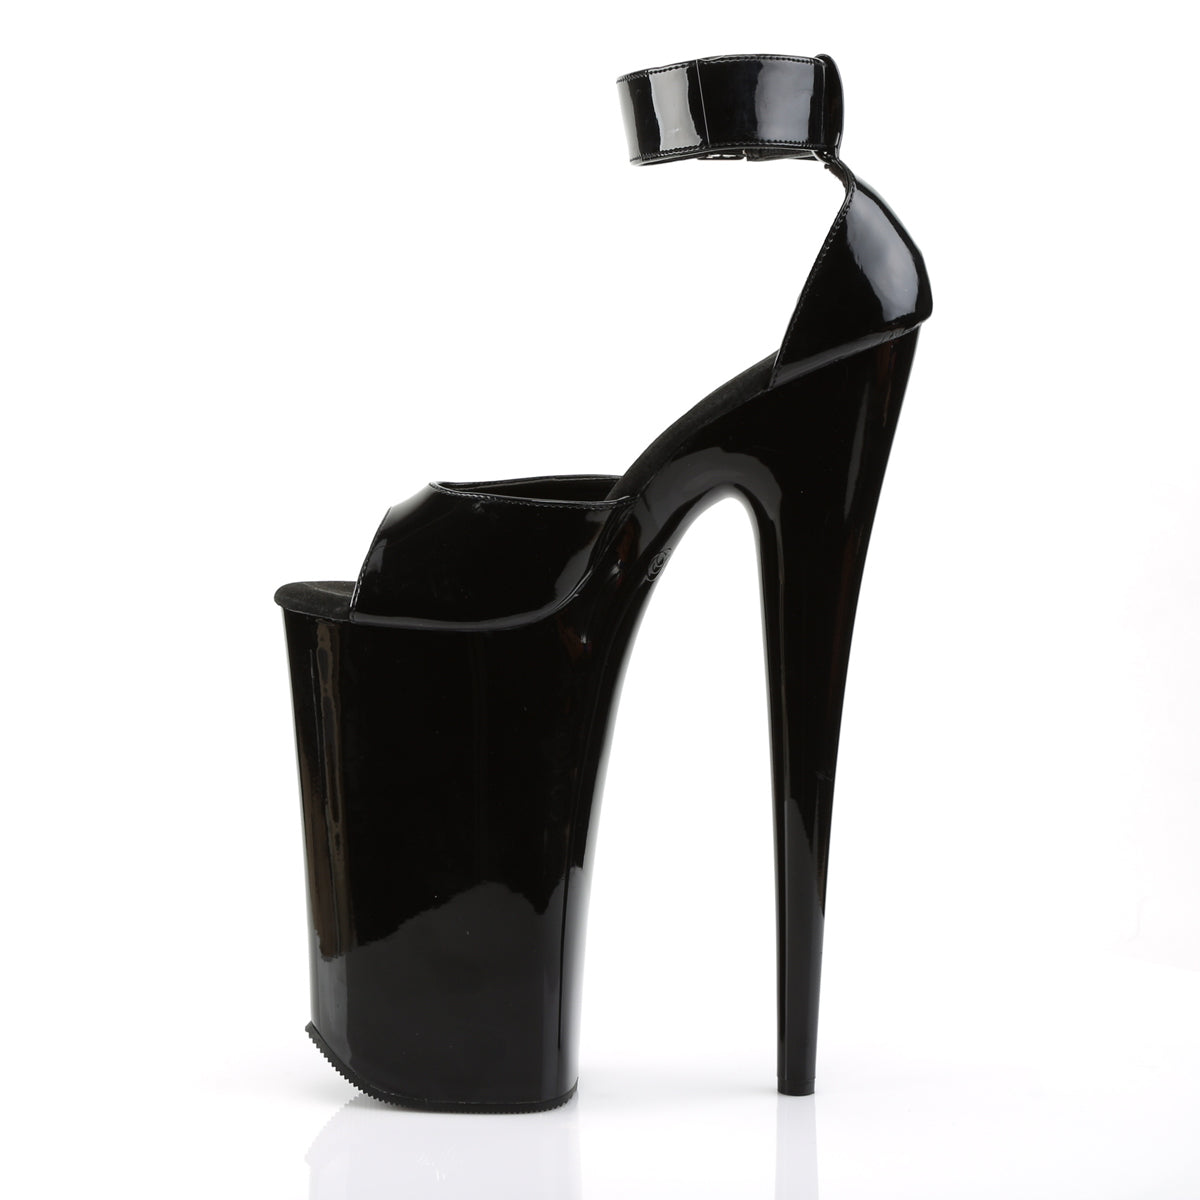 BEYOND-089 Pleaser Black Platform Shoes [Extreme High Heels]